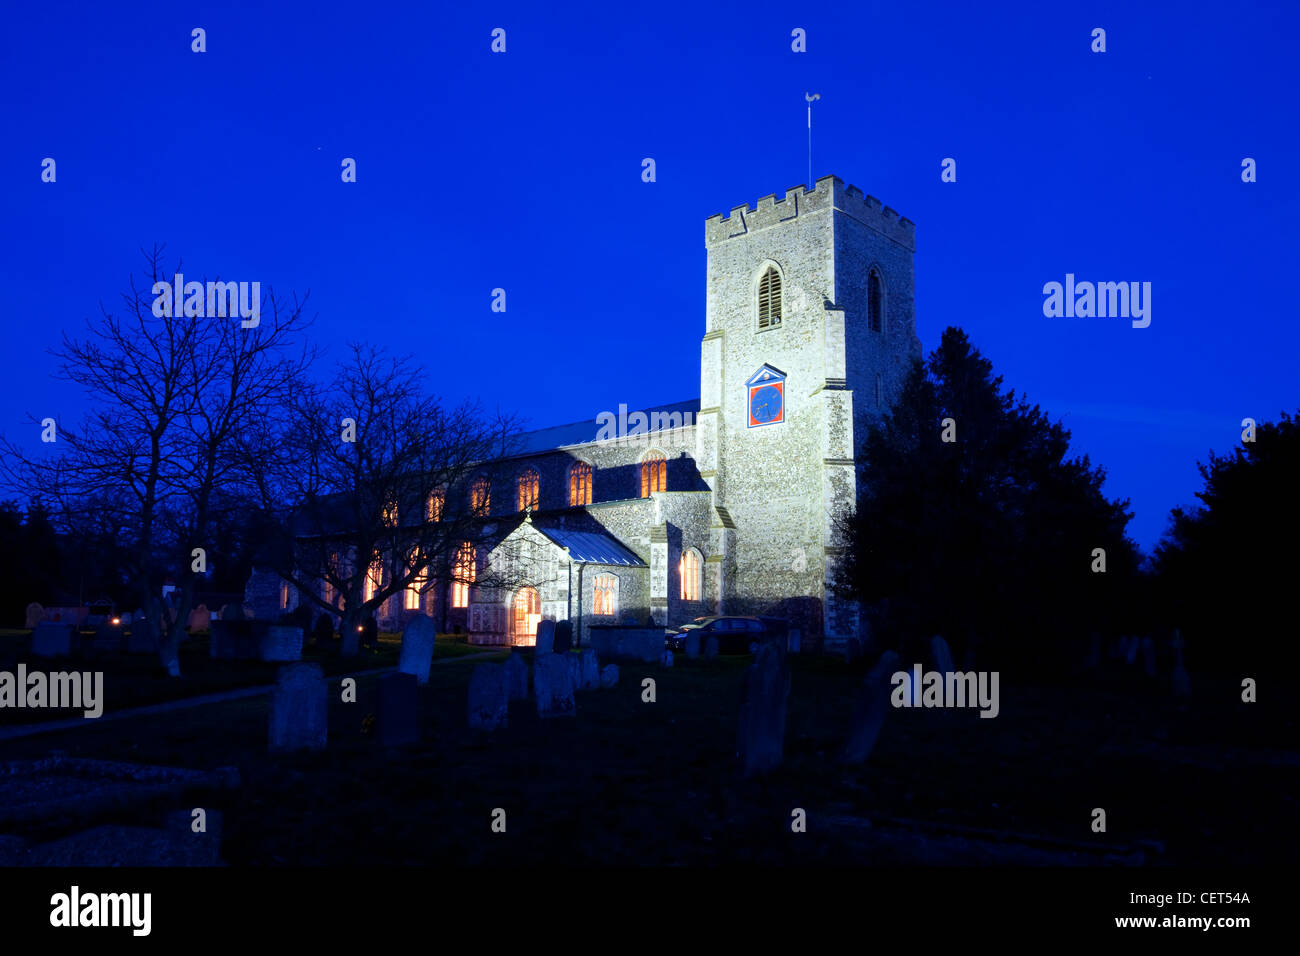 St Catherine's Church, construit aux xive et xve siècles, illuminé la nuit. Banque D'Images